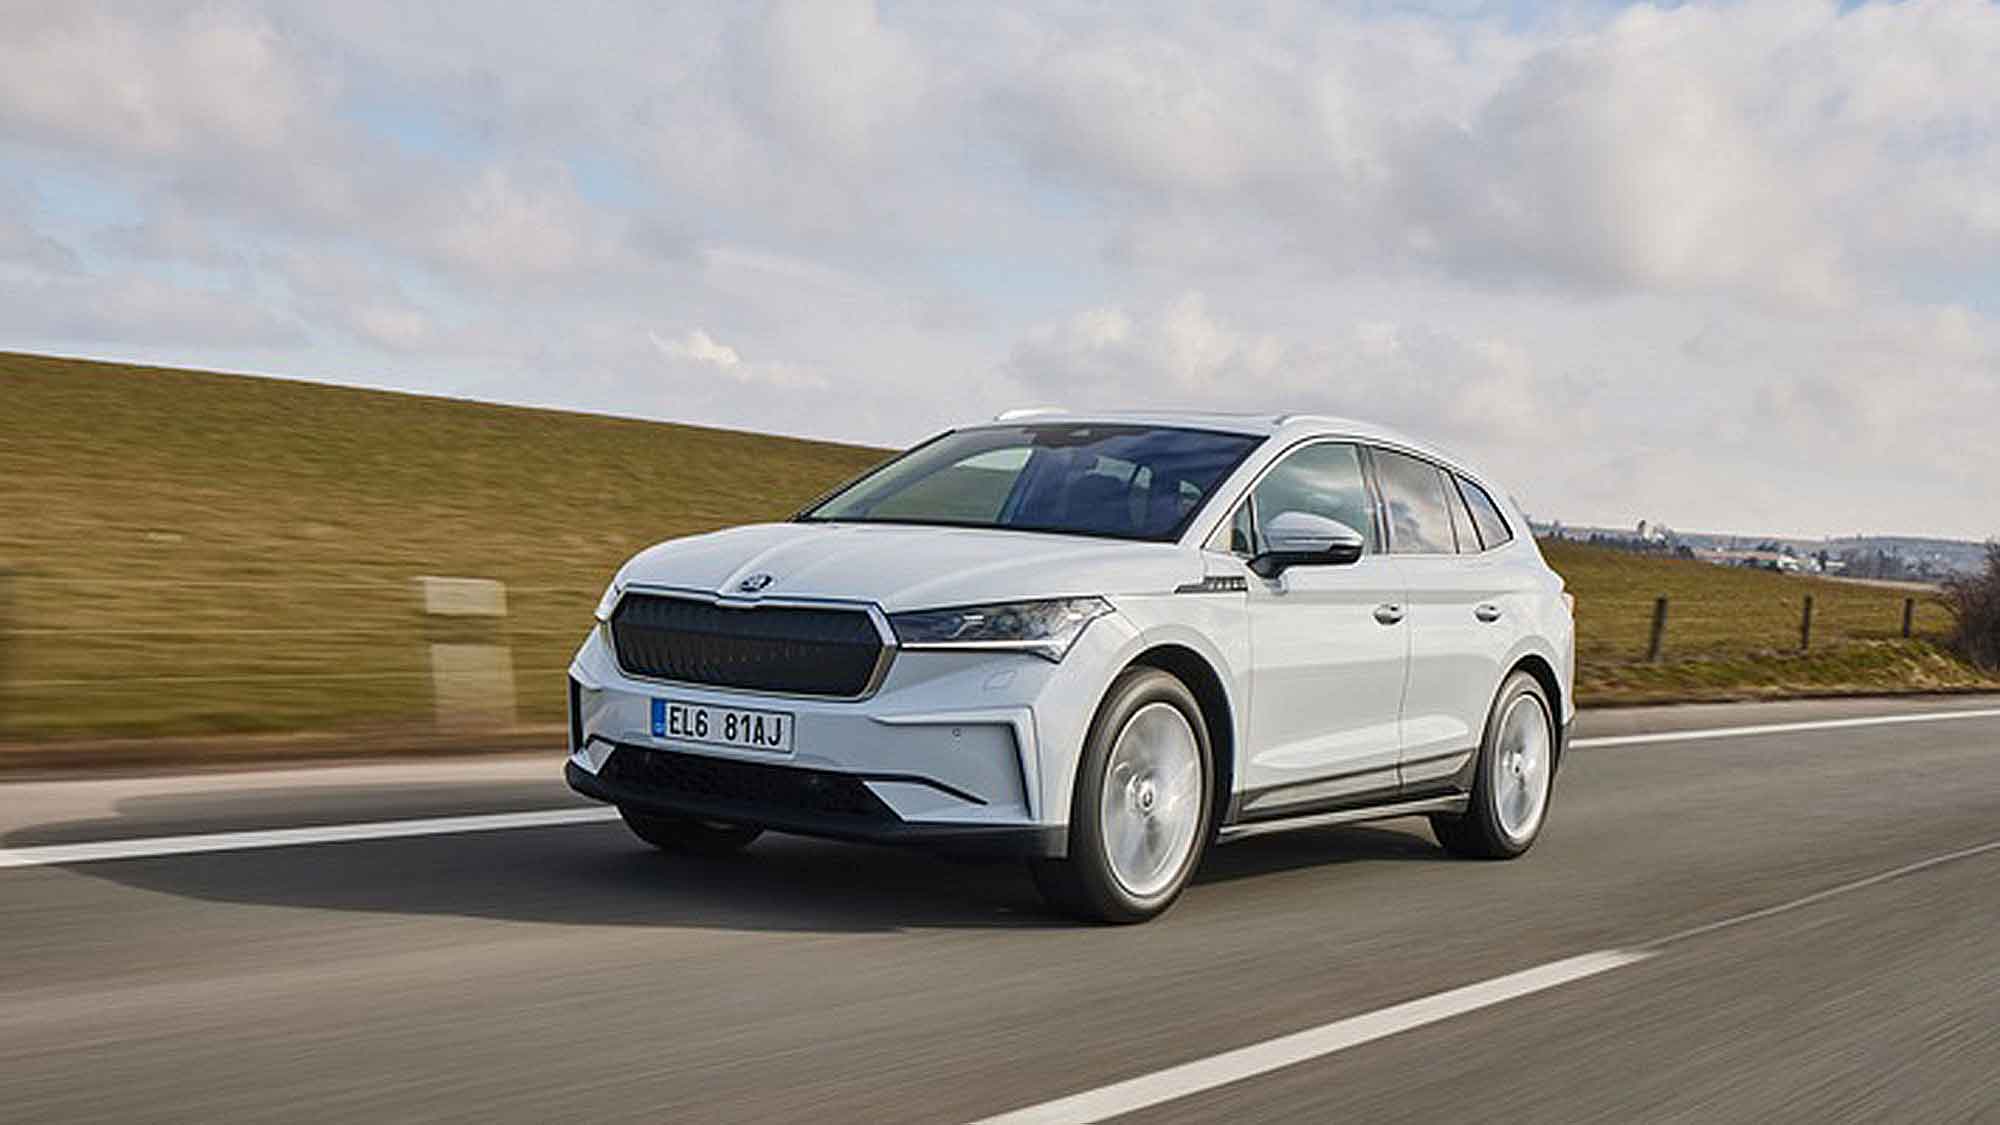 Günstiger Einstieg in die Elektromobilität: Škoda Enyaq 60 für 299 Euro monatlich leasen